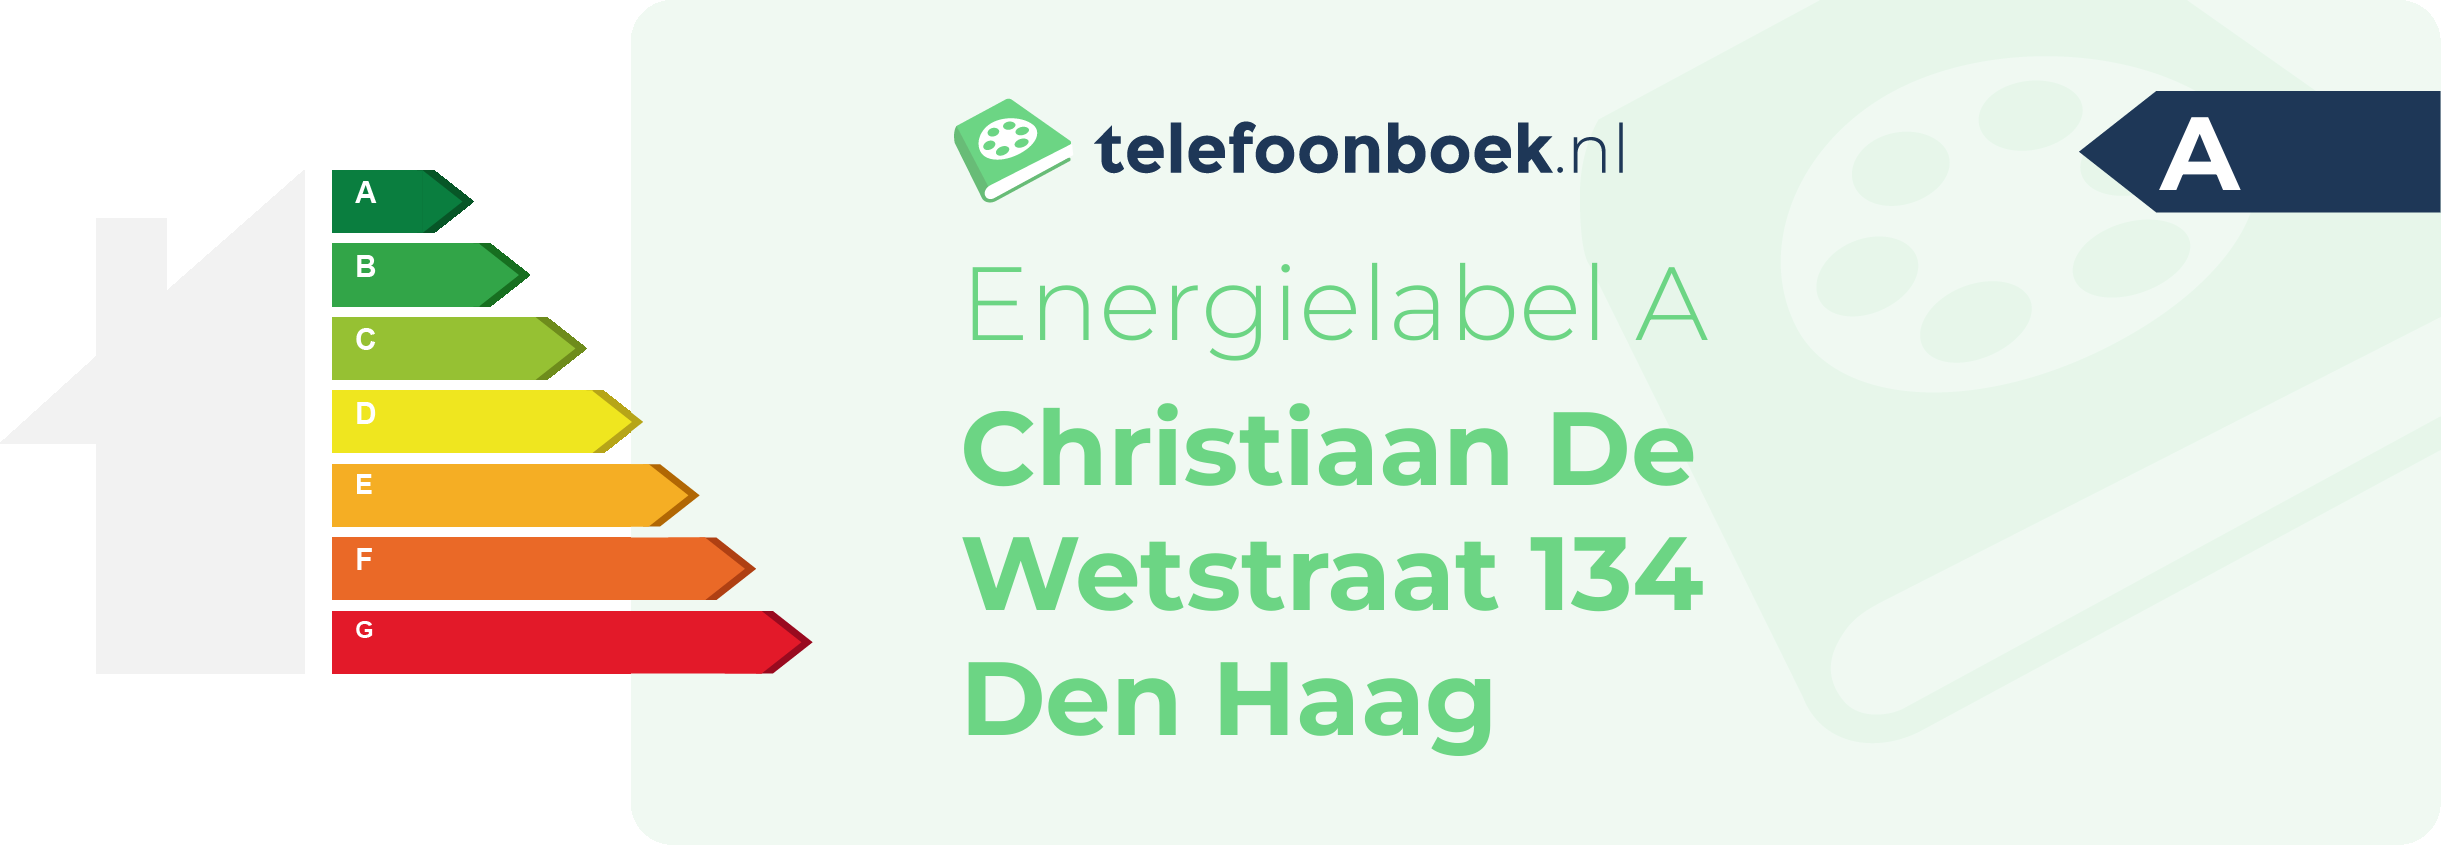 Energielabel Christiaan De Wetstraat 134 Den Haag